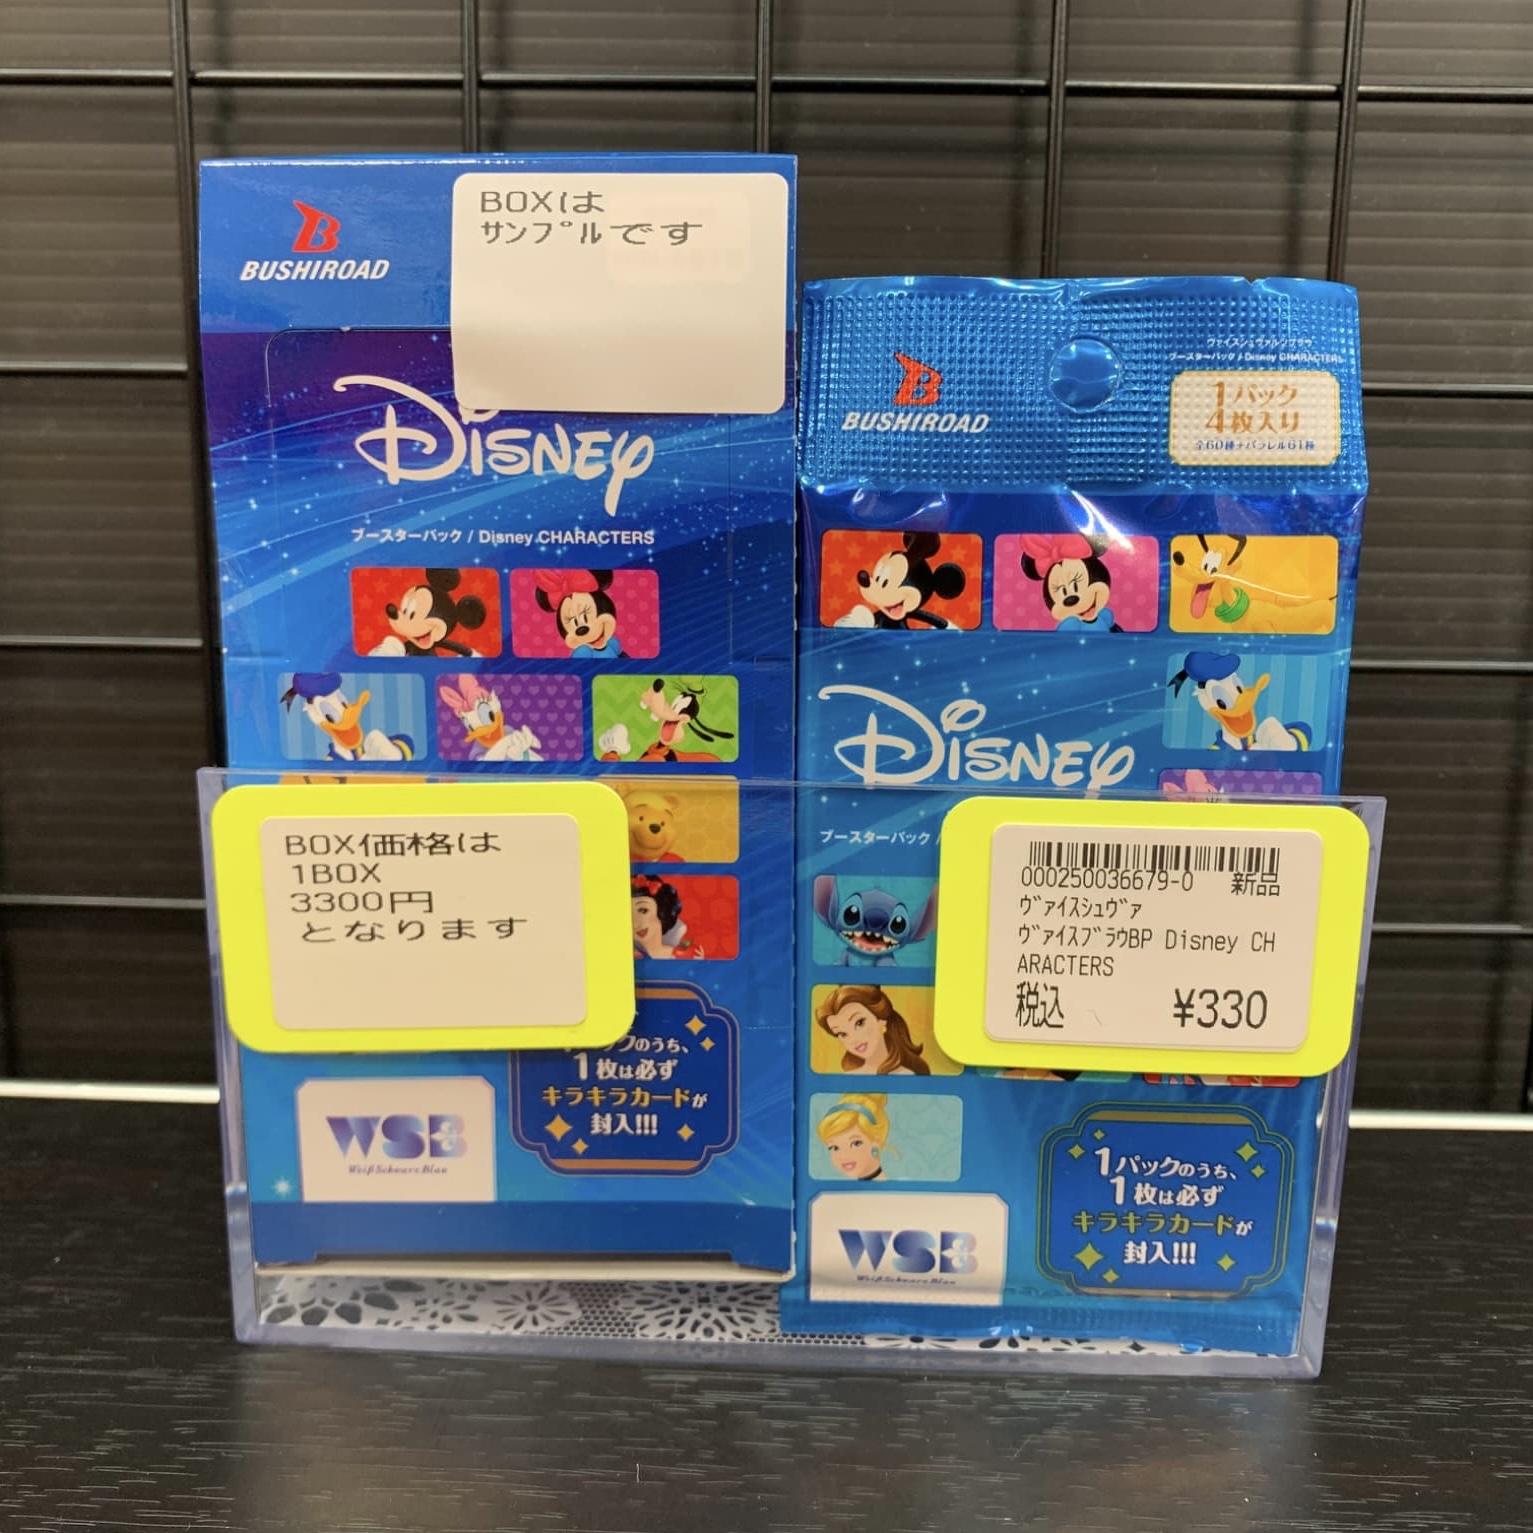 最新最全の ヴァイスシュヴァルツブラウ ブースターパック Disney CHARACTERS BOX